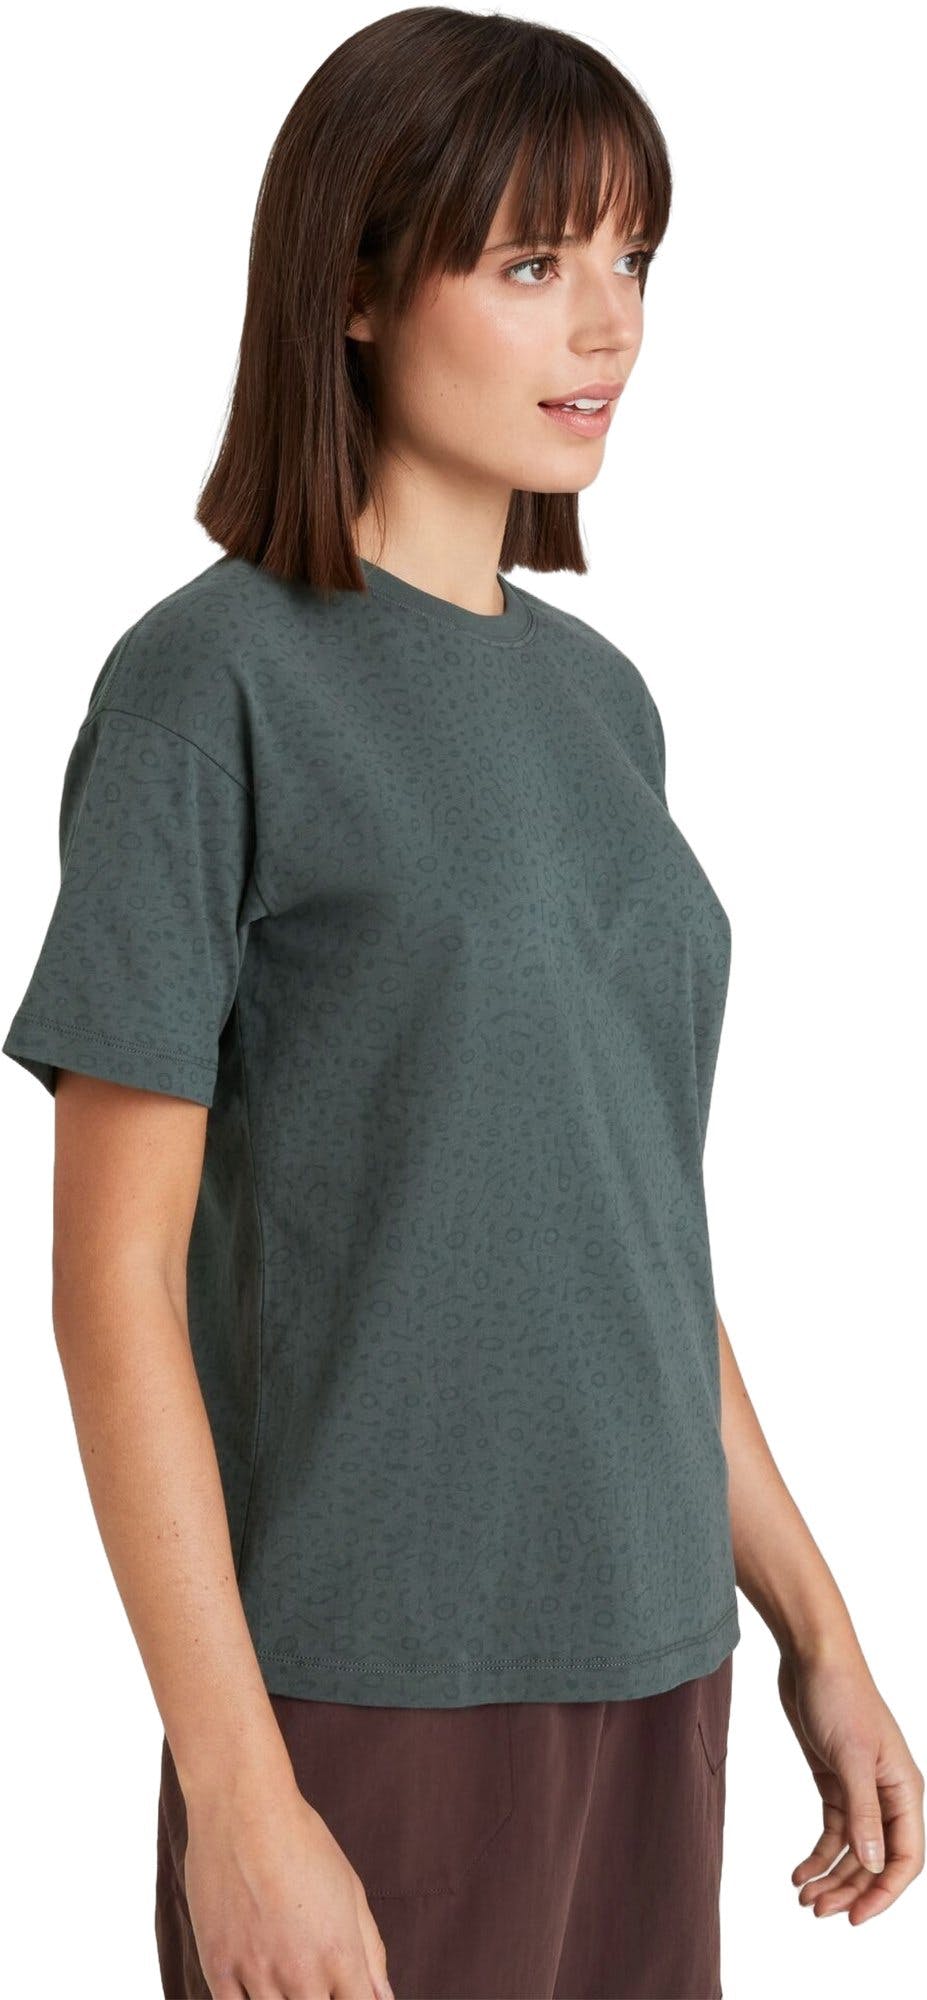 Numéro de l'image de la galerie de produits 3 pour le produit T-shirt à manches courtes Manta - Femme